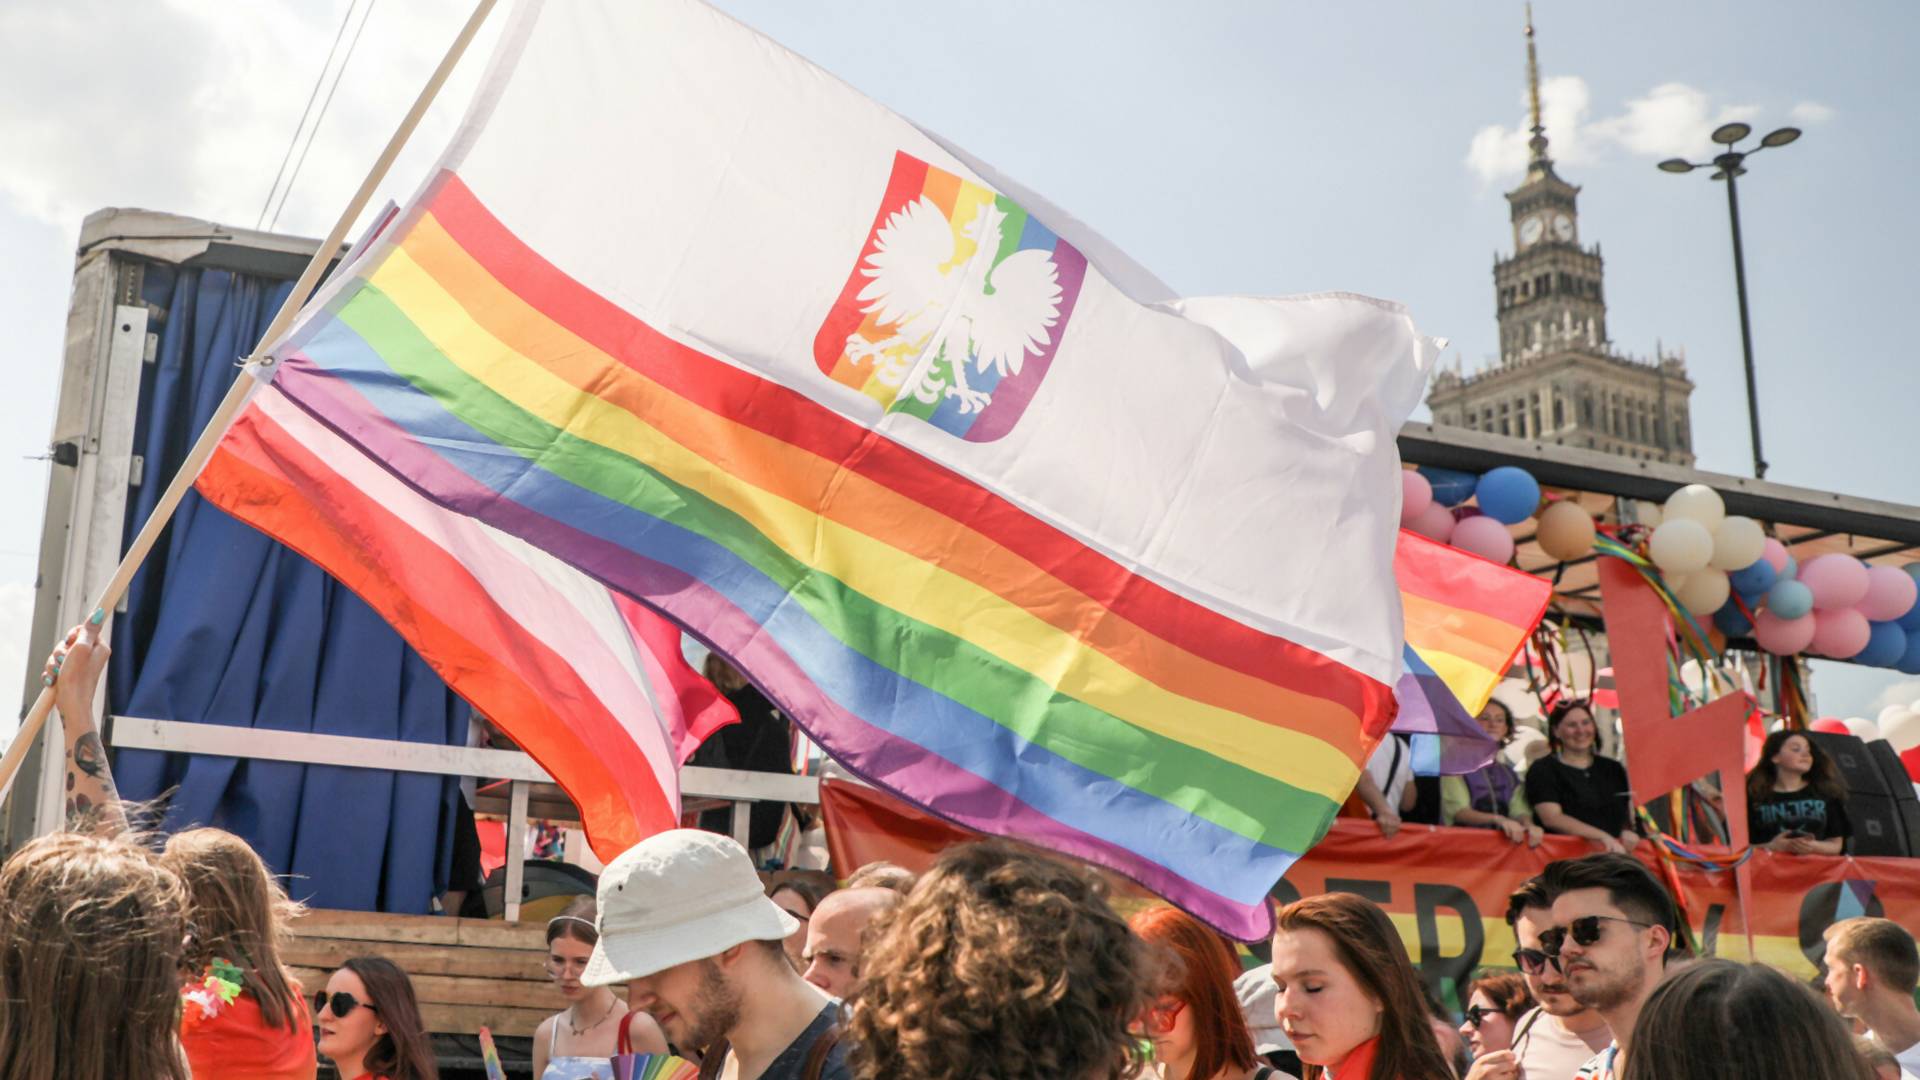 35 proc. Polaków uważa, że osoby LGBT+ i heteroseksualne mają równe prawa